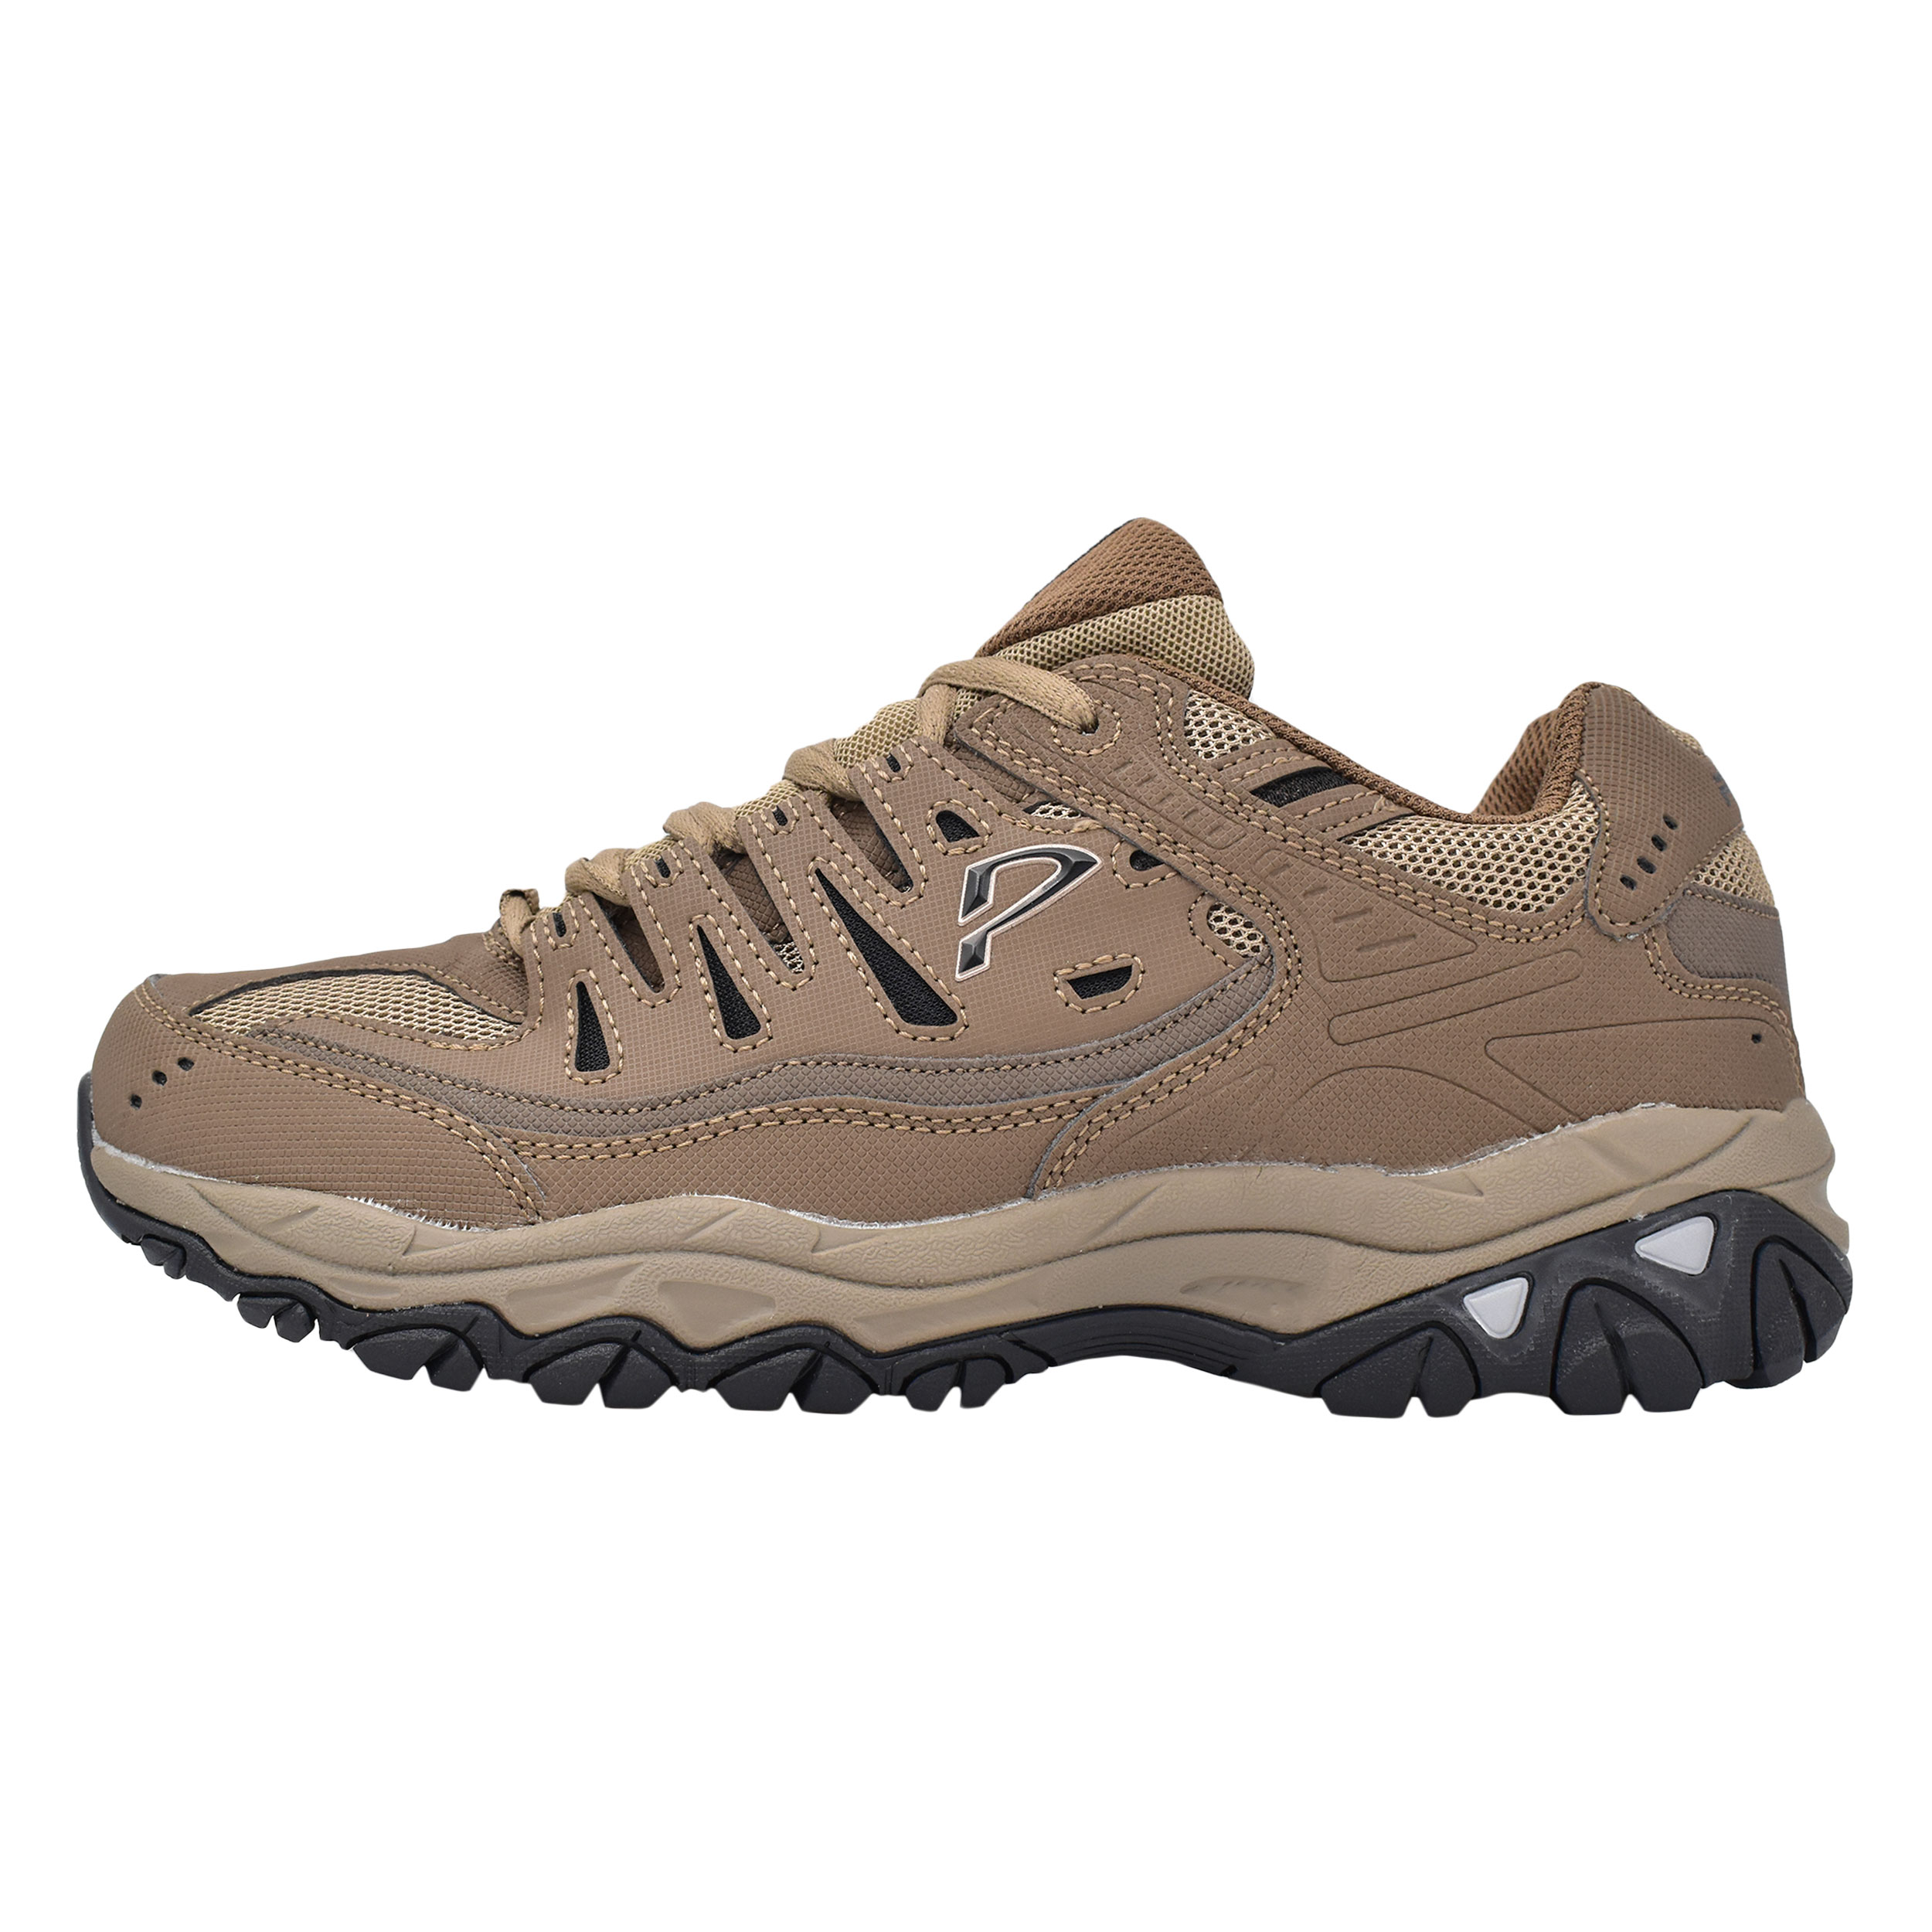 نکته خرید - قیمت روز کفش کوهنوردی مردانه پاما مدل داروین کد G1022 خرید